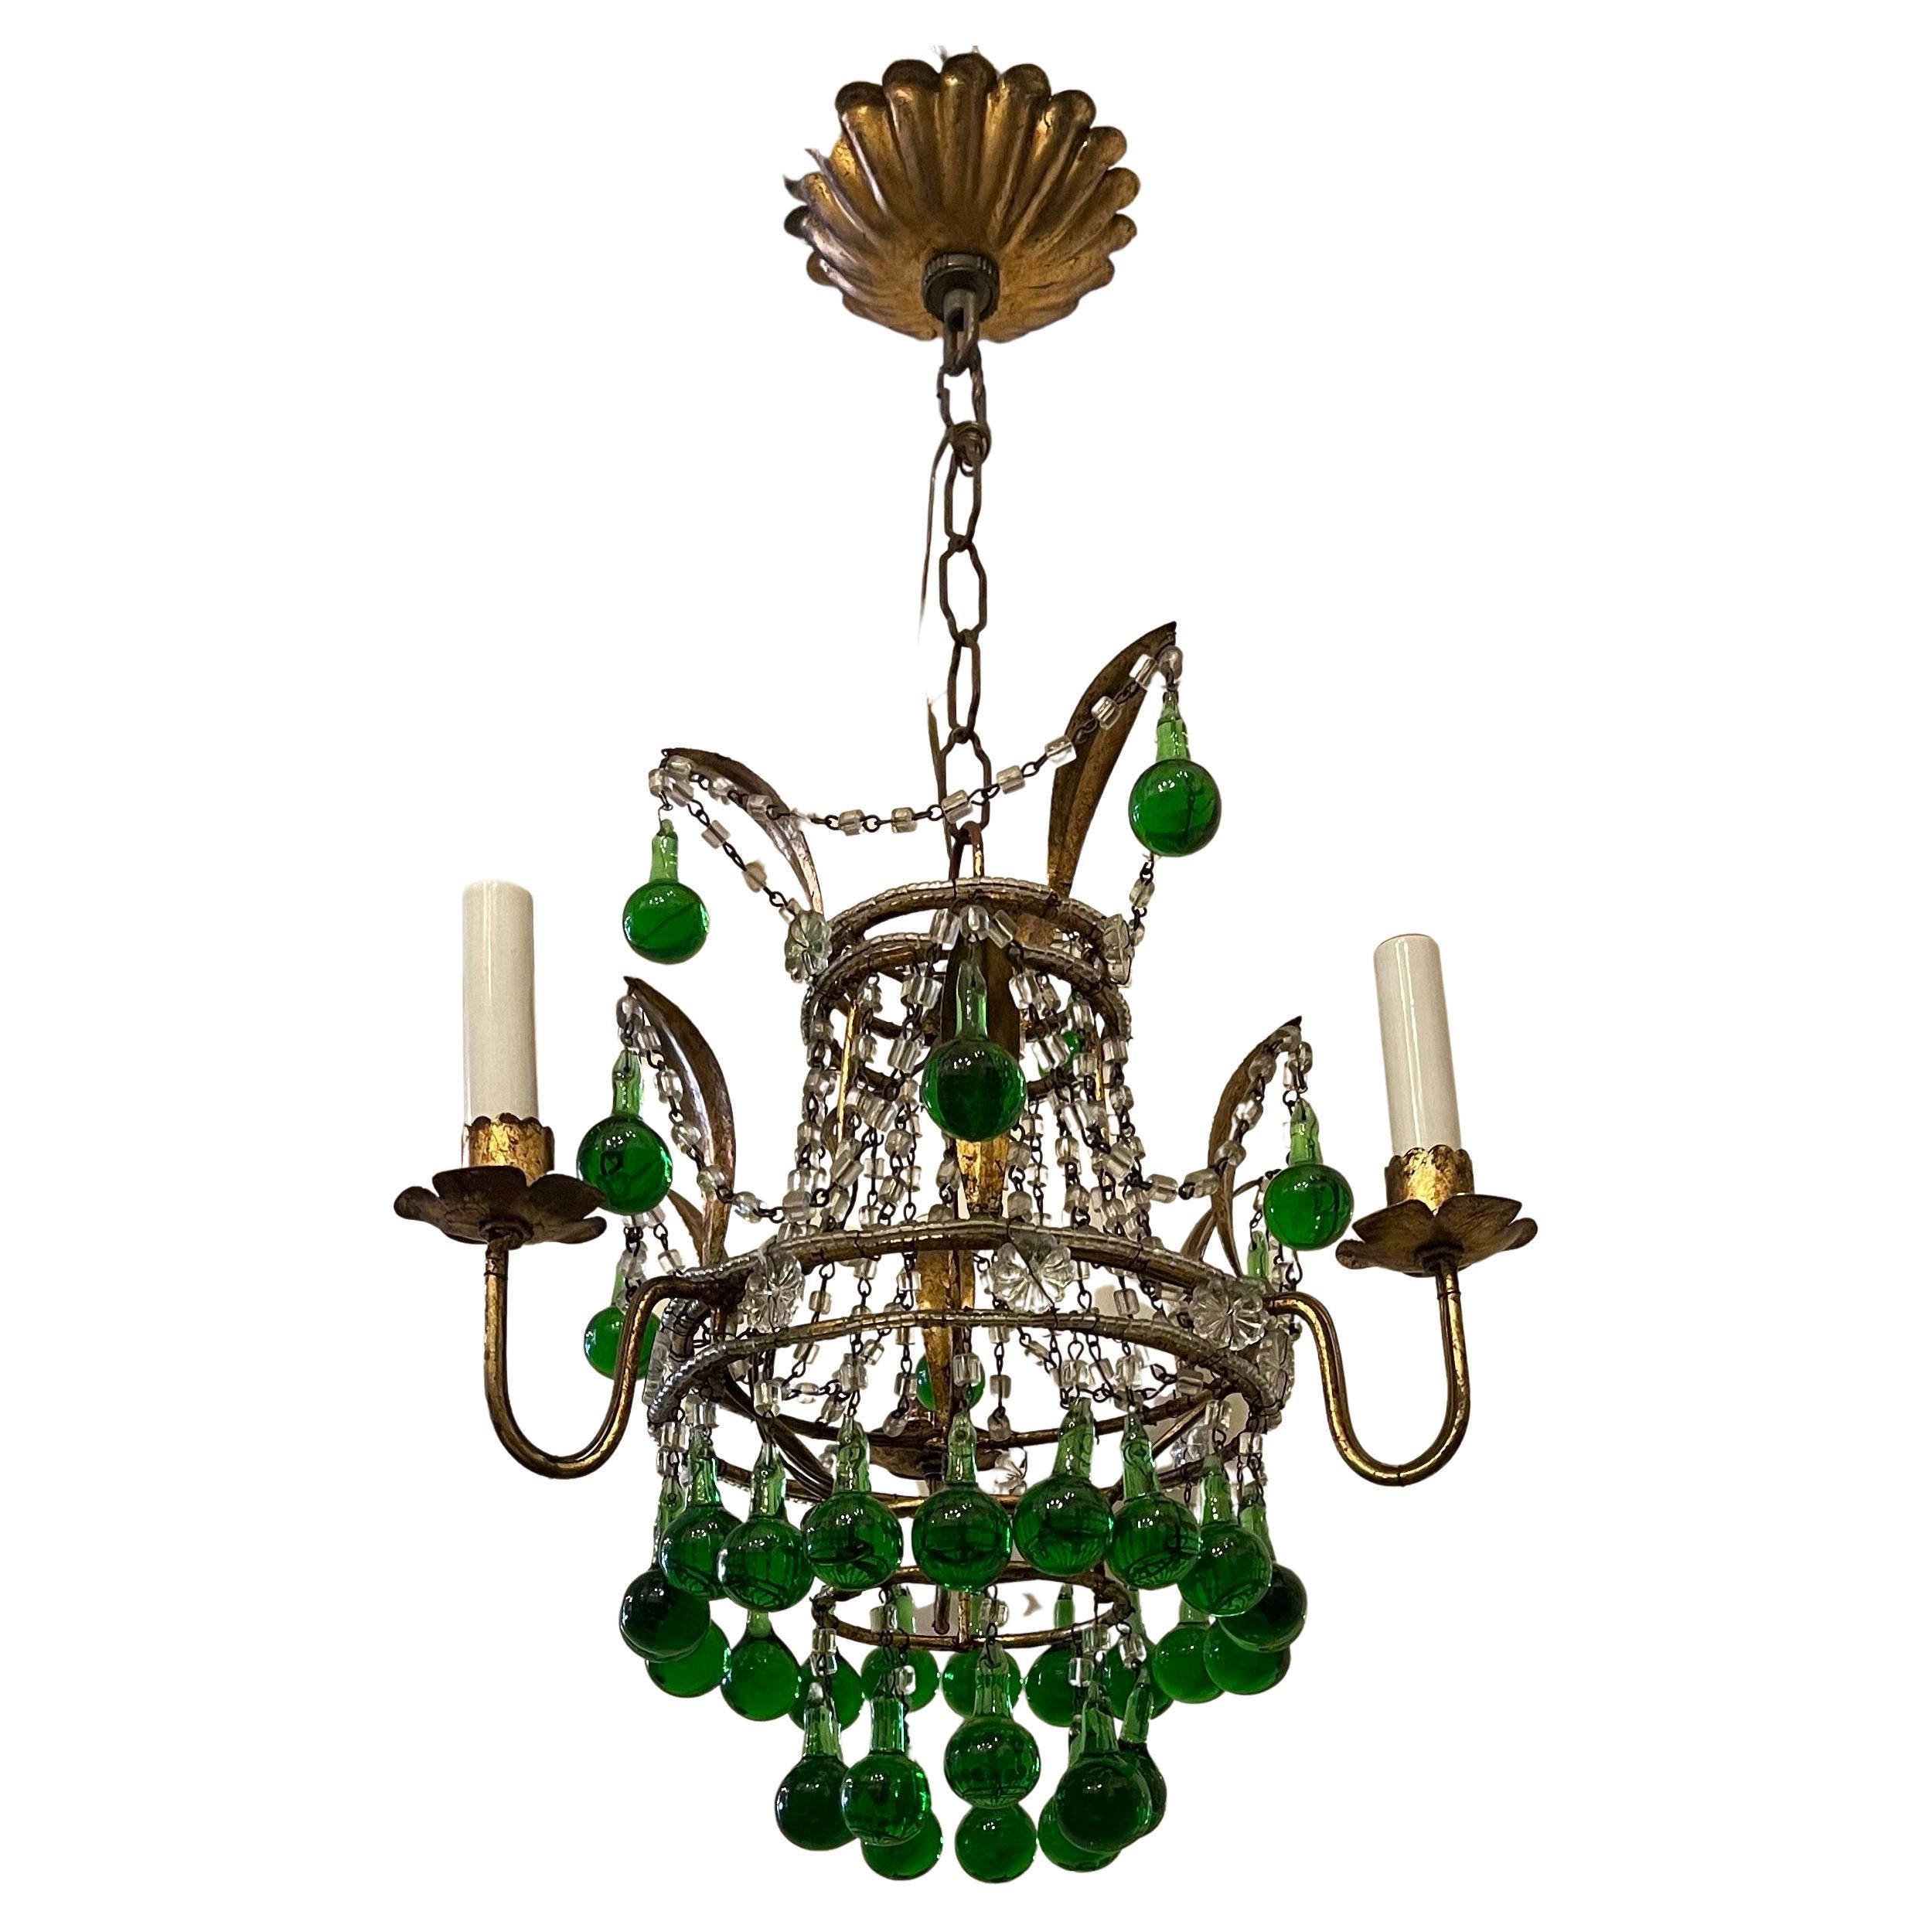 Un merveilleux cristal perlé doré avec des gouttes de larmes vert émeraude, ce petit lustre italien a 3 lampes candélabres.